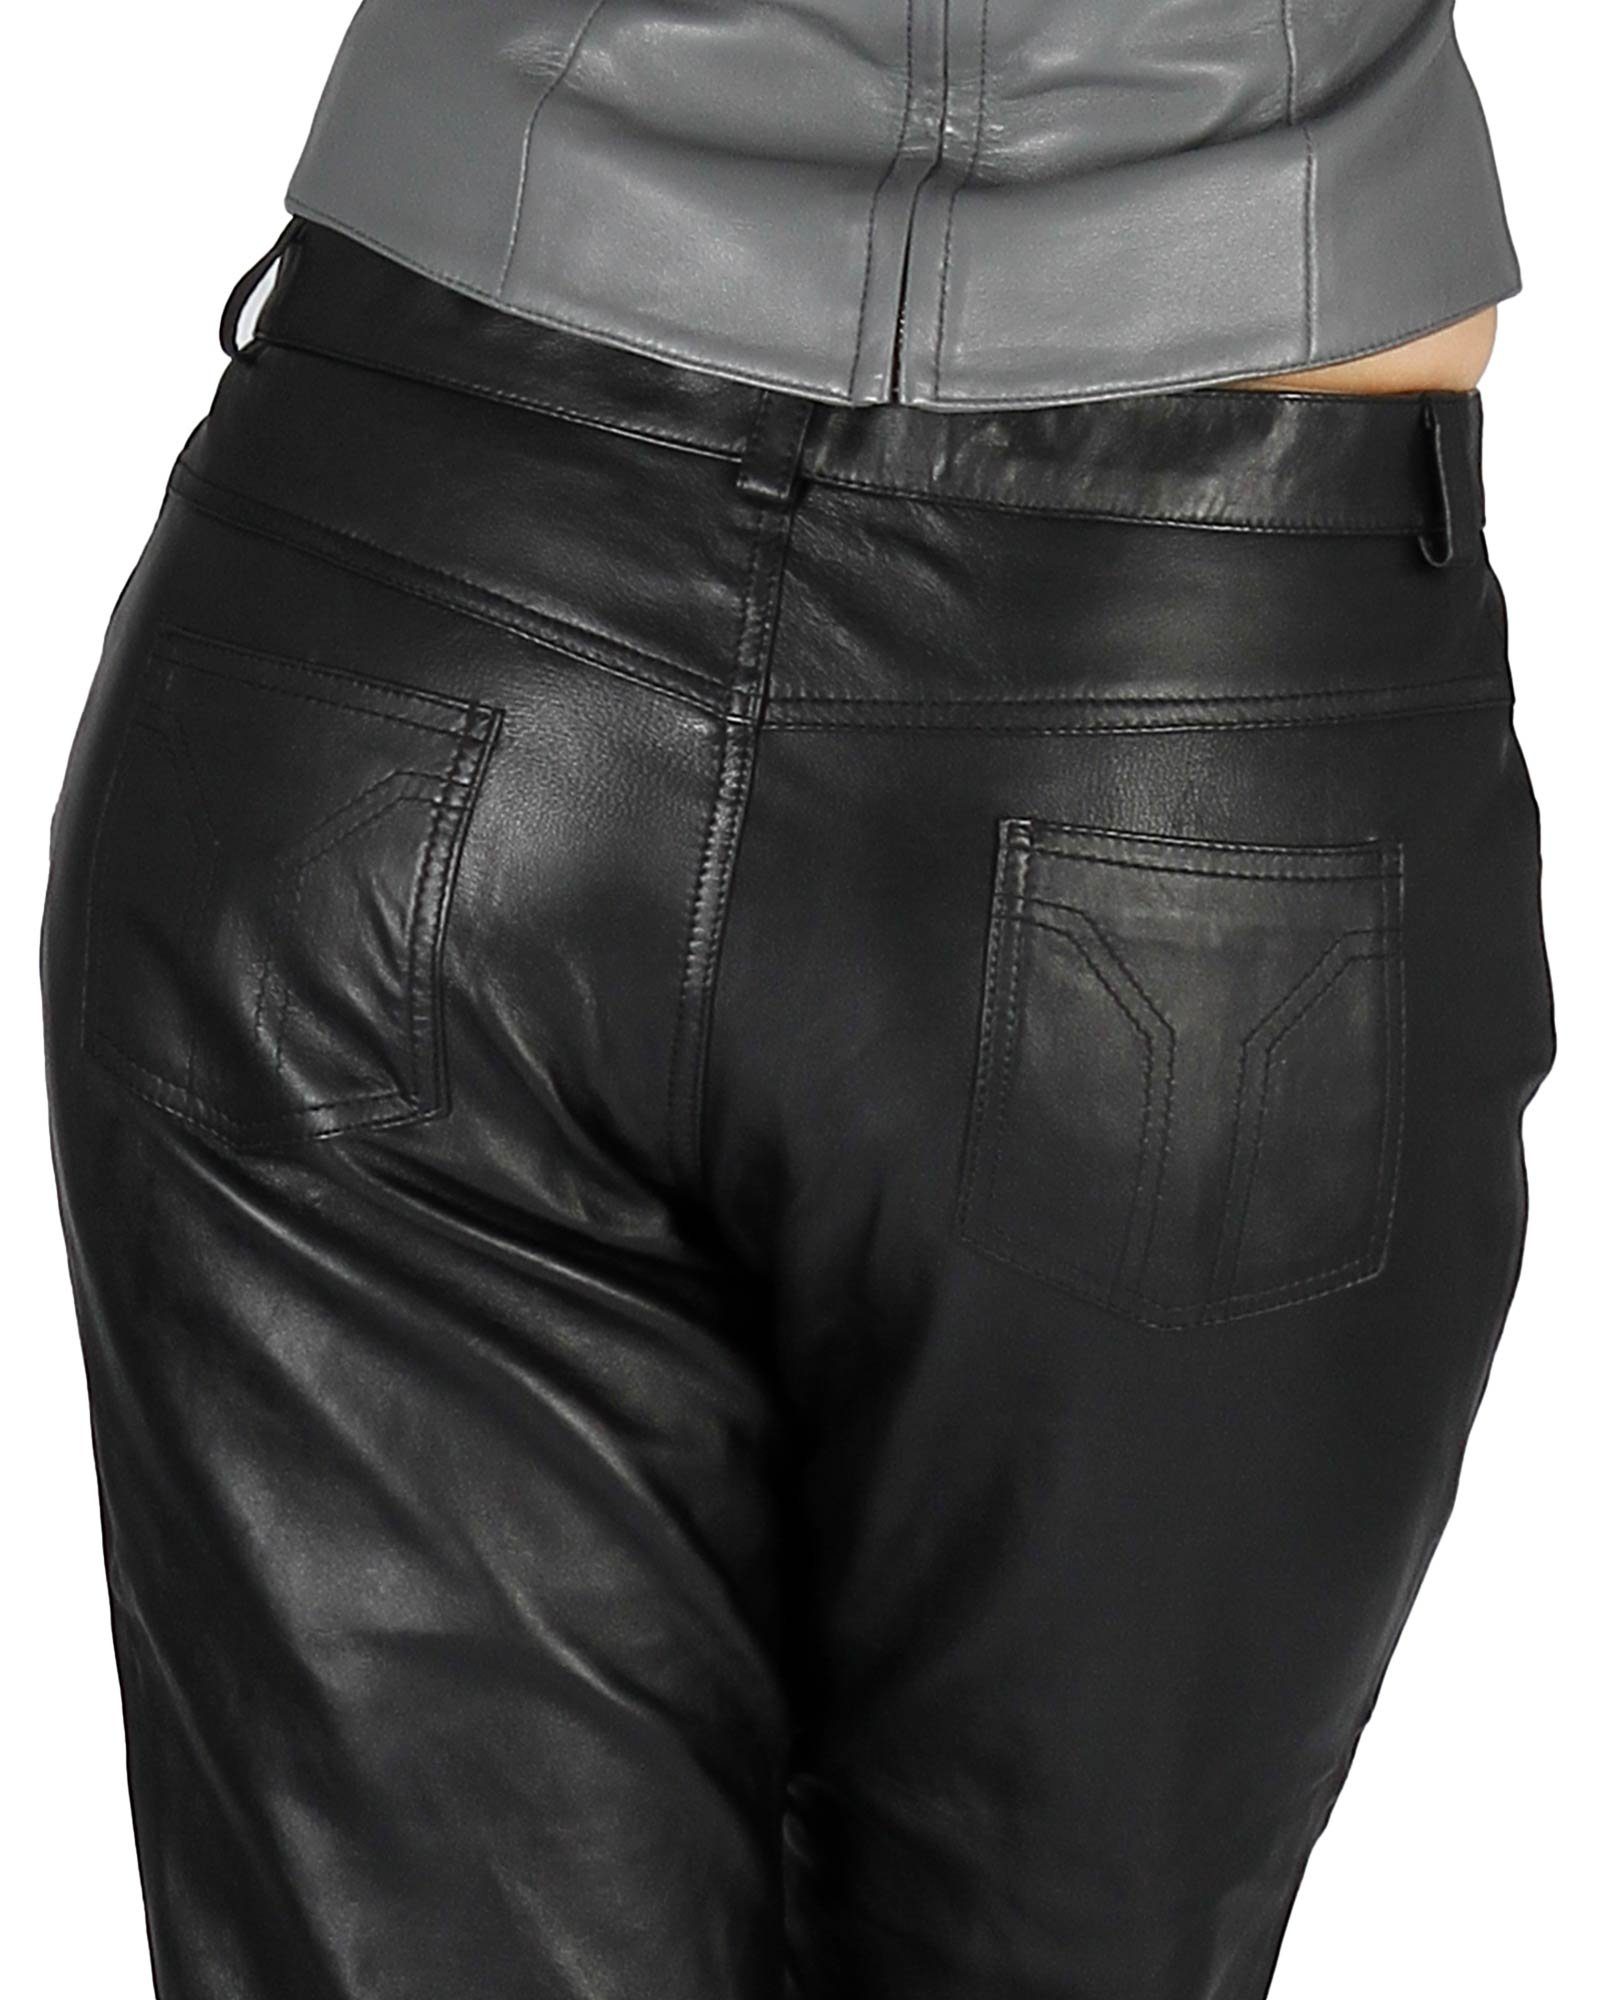 Lederhose Fetish-Design Schwarz Lederhose 5-Pocket Echtes Damenlederhose Leder